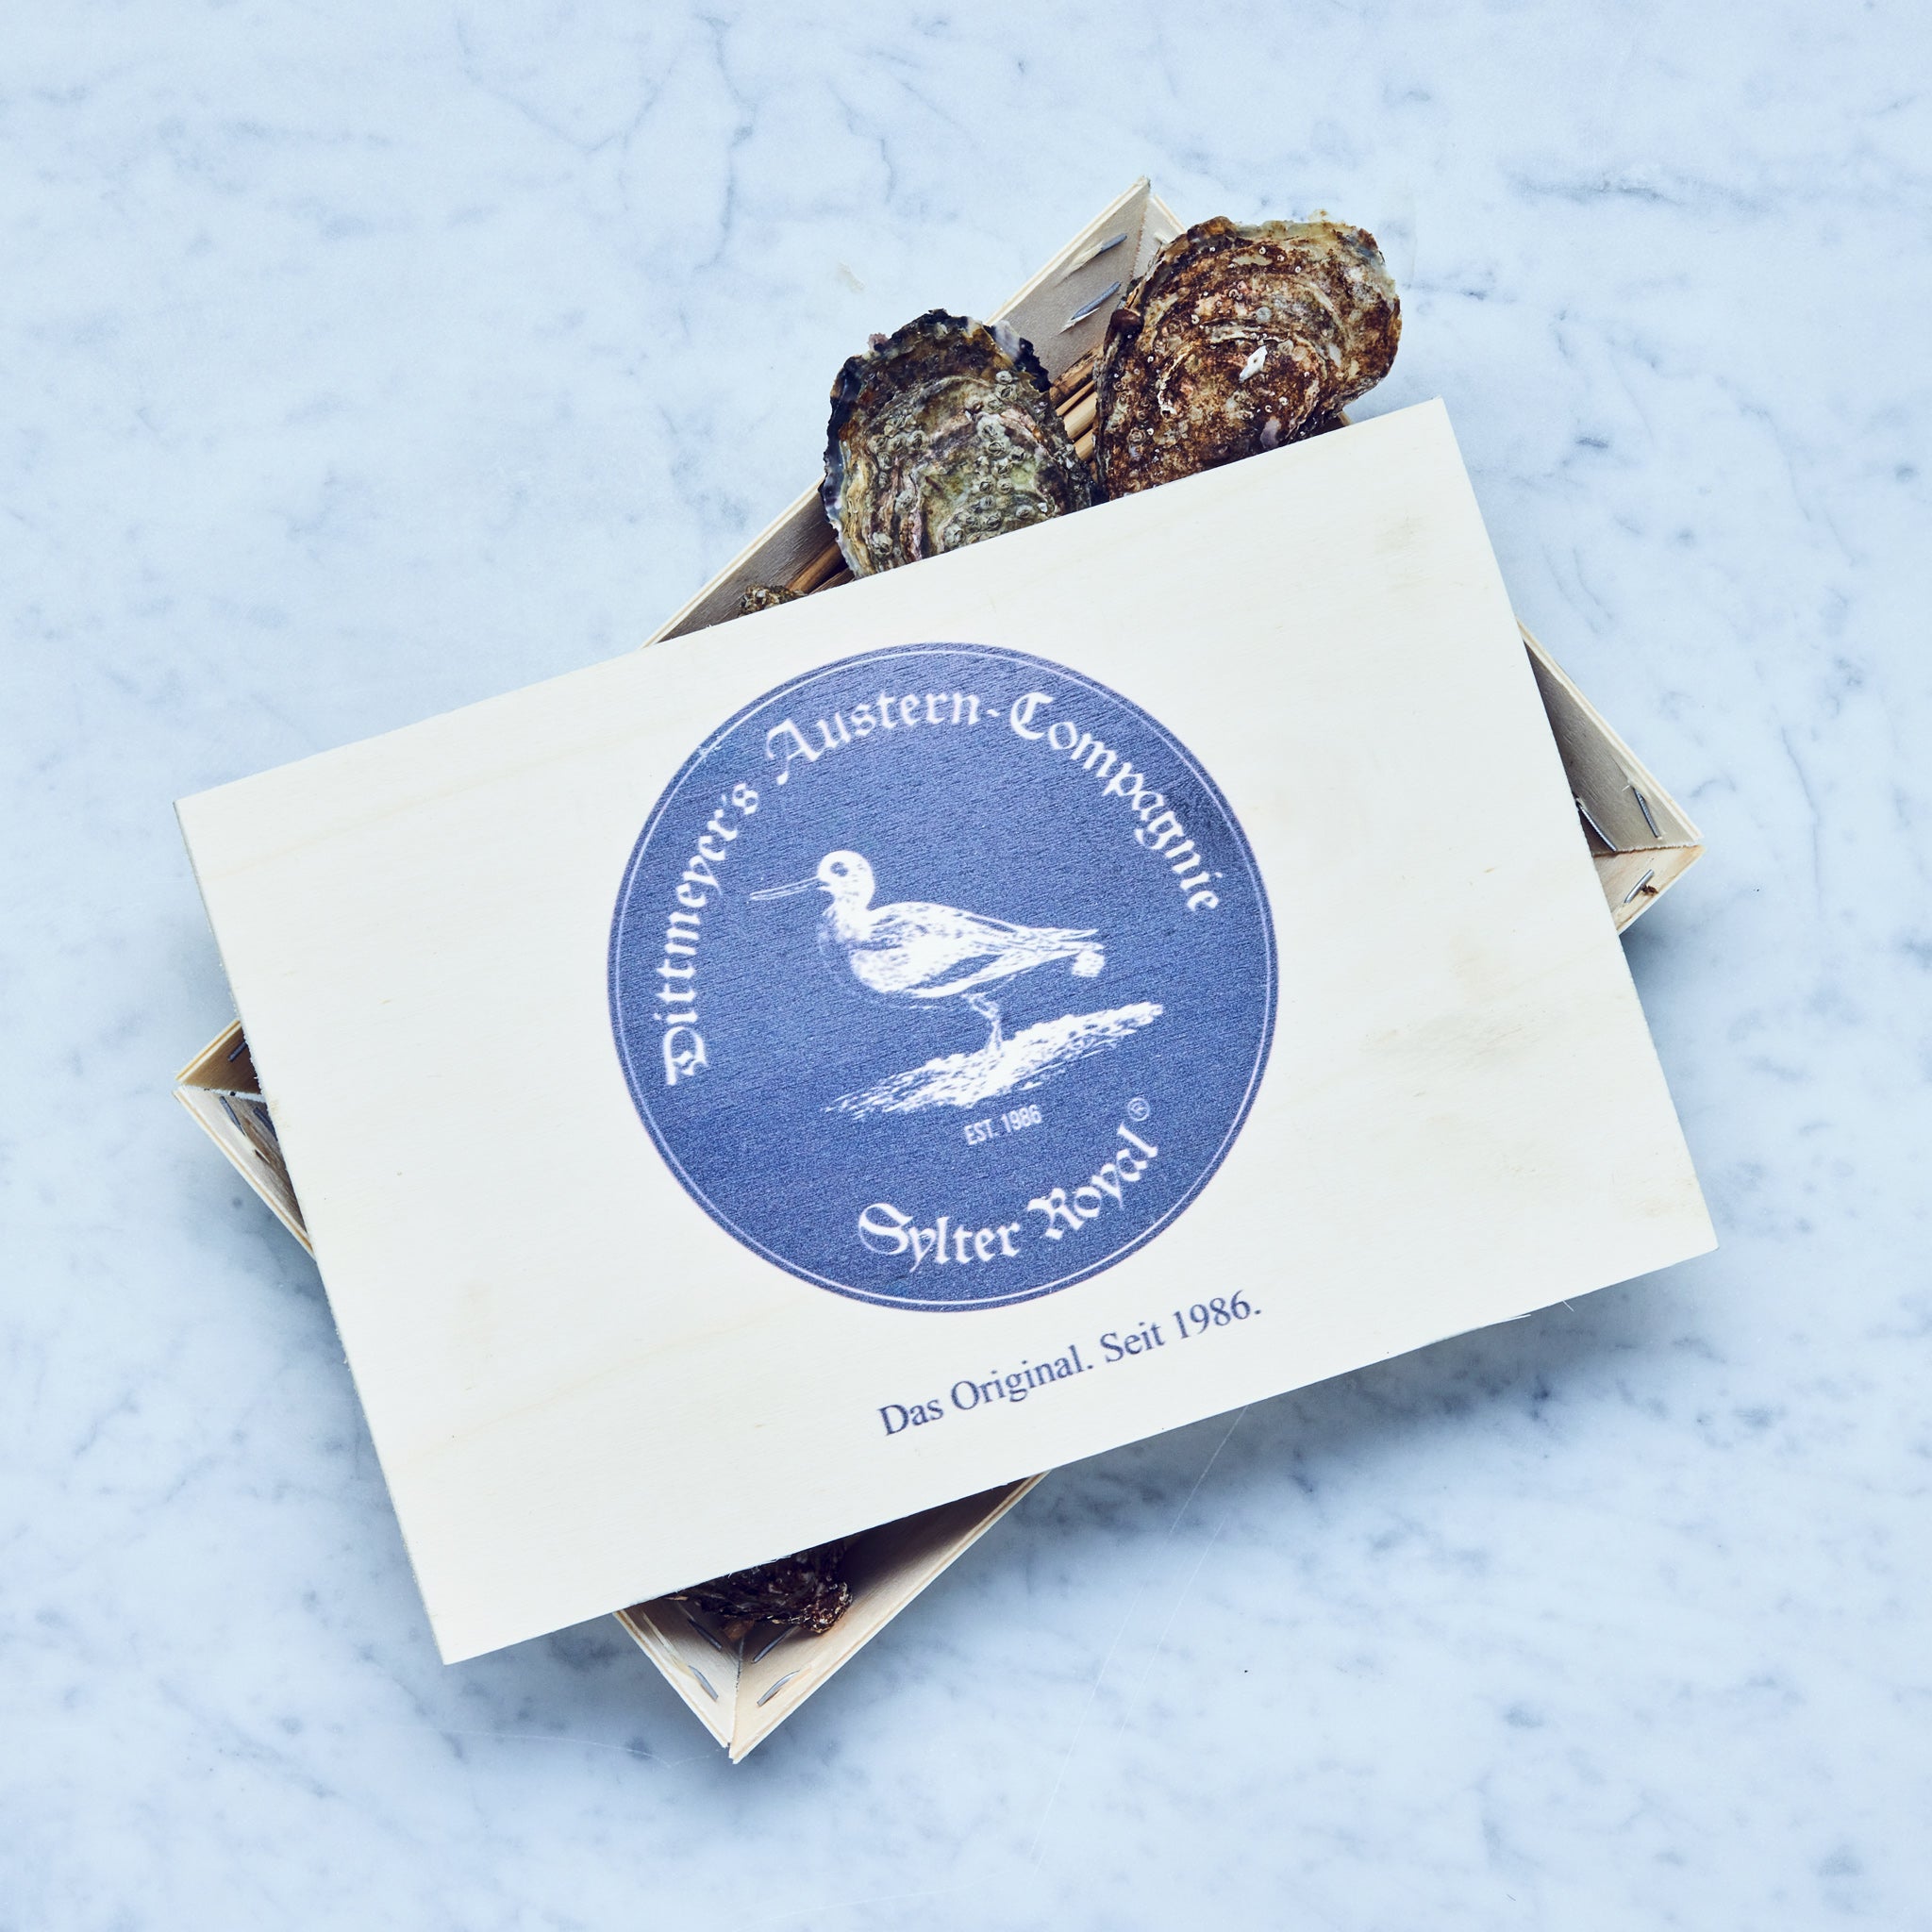 Frische Sylter Royal Austern in einer hölzernen Box mit einem blauen Label.